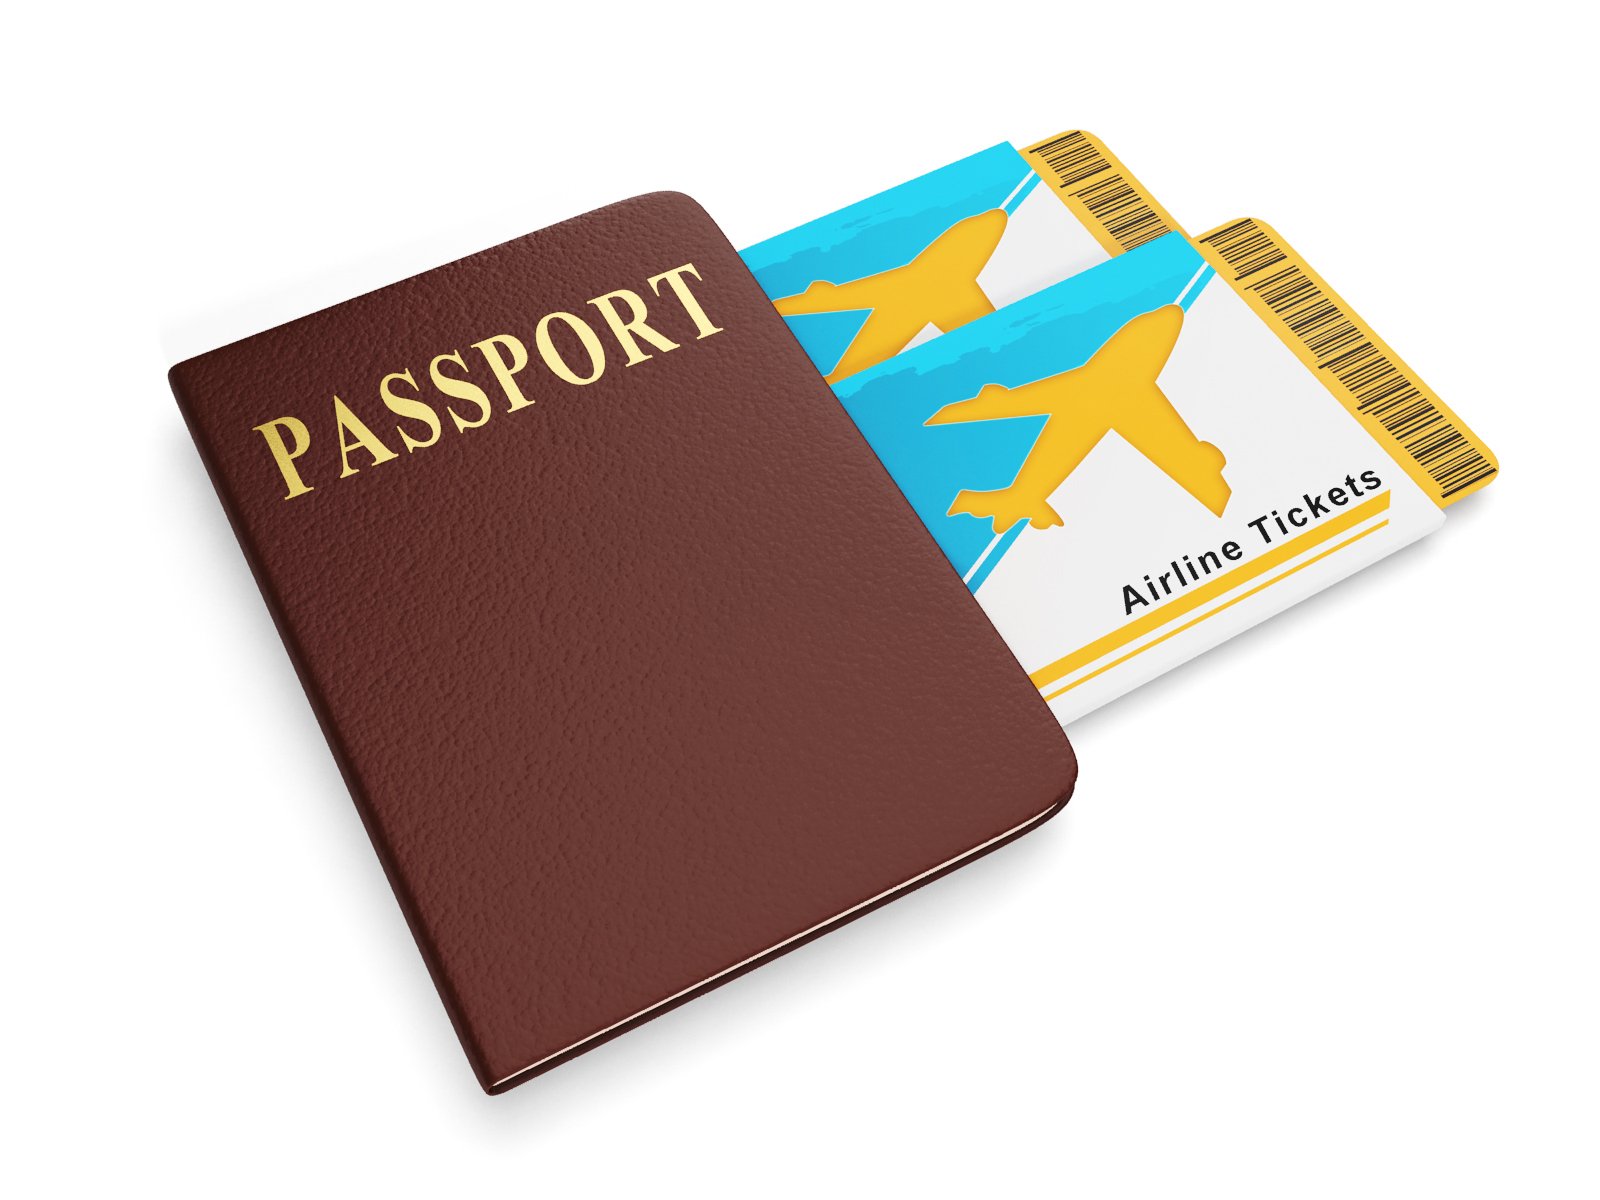 Come fare la richiesta del passaporto online passo per passo